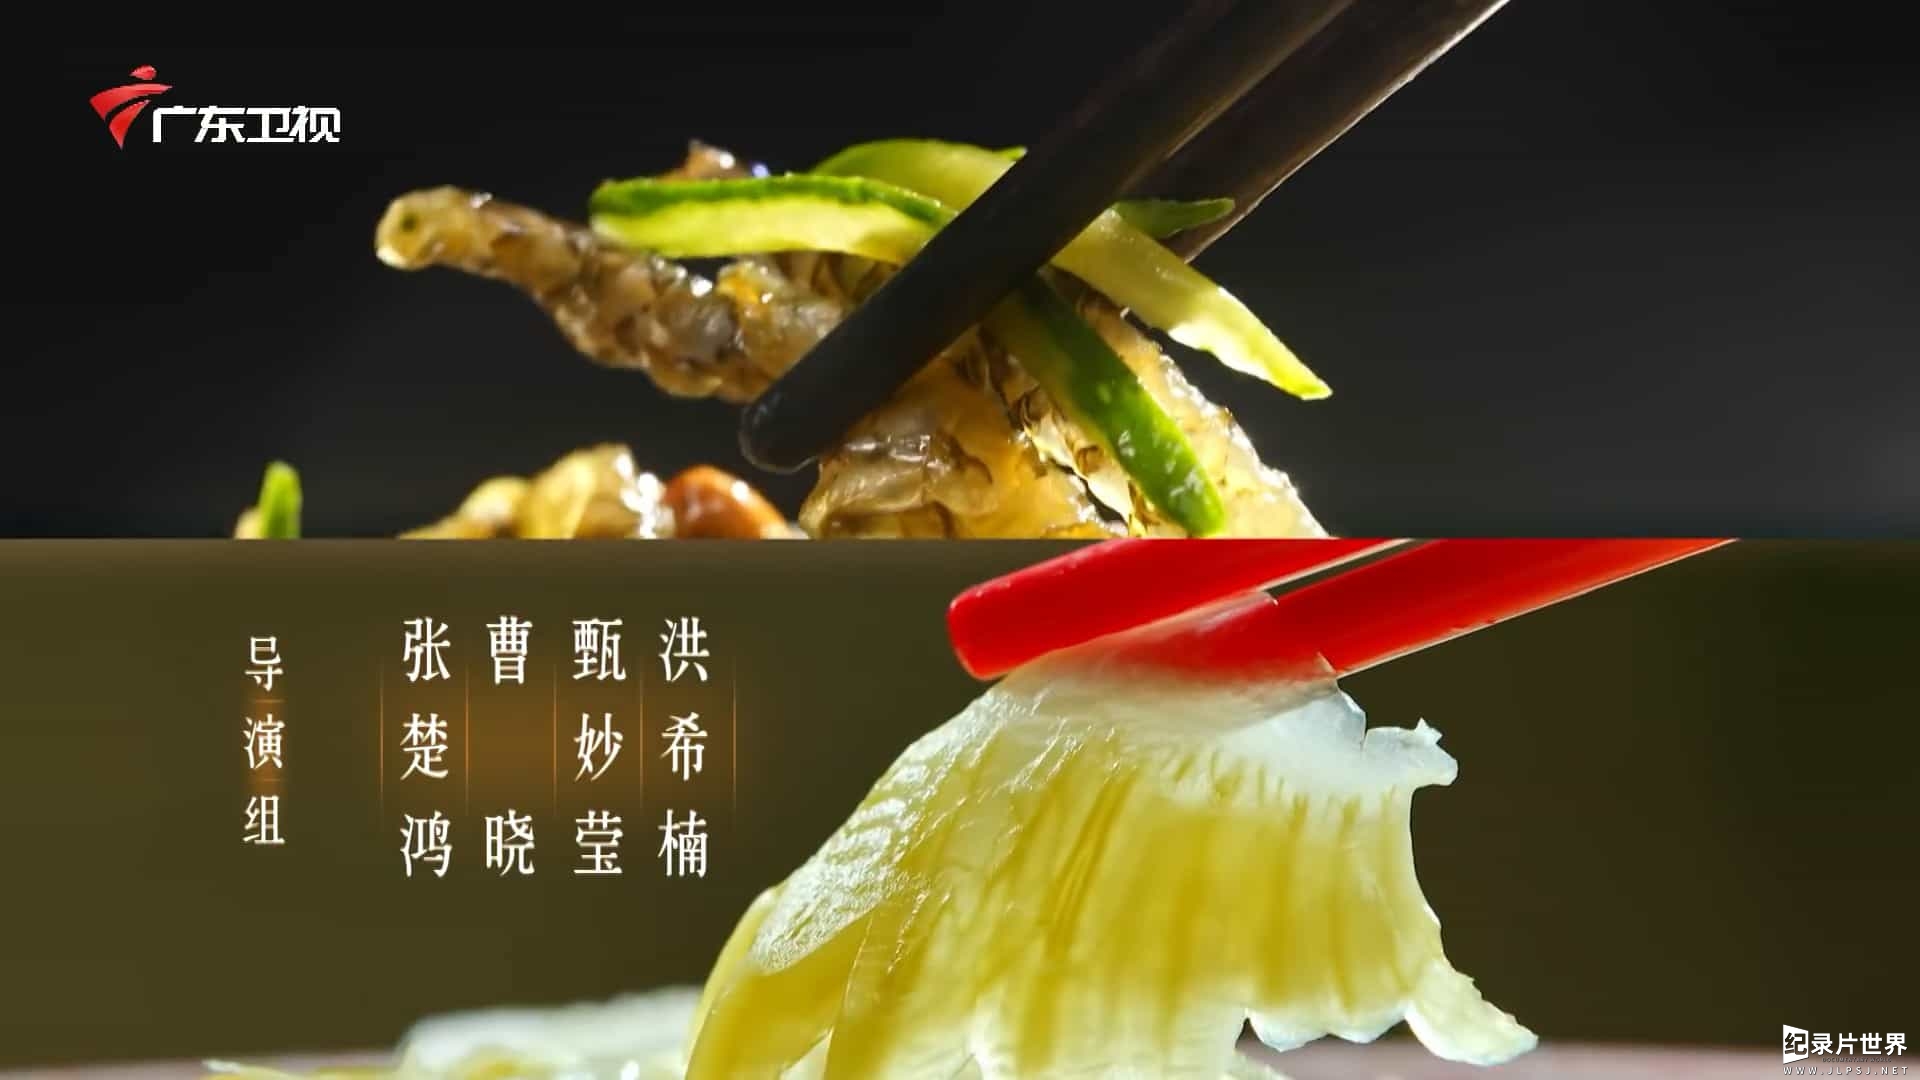 广东美食纪录片/中国美食系列《老广的味道》7季全